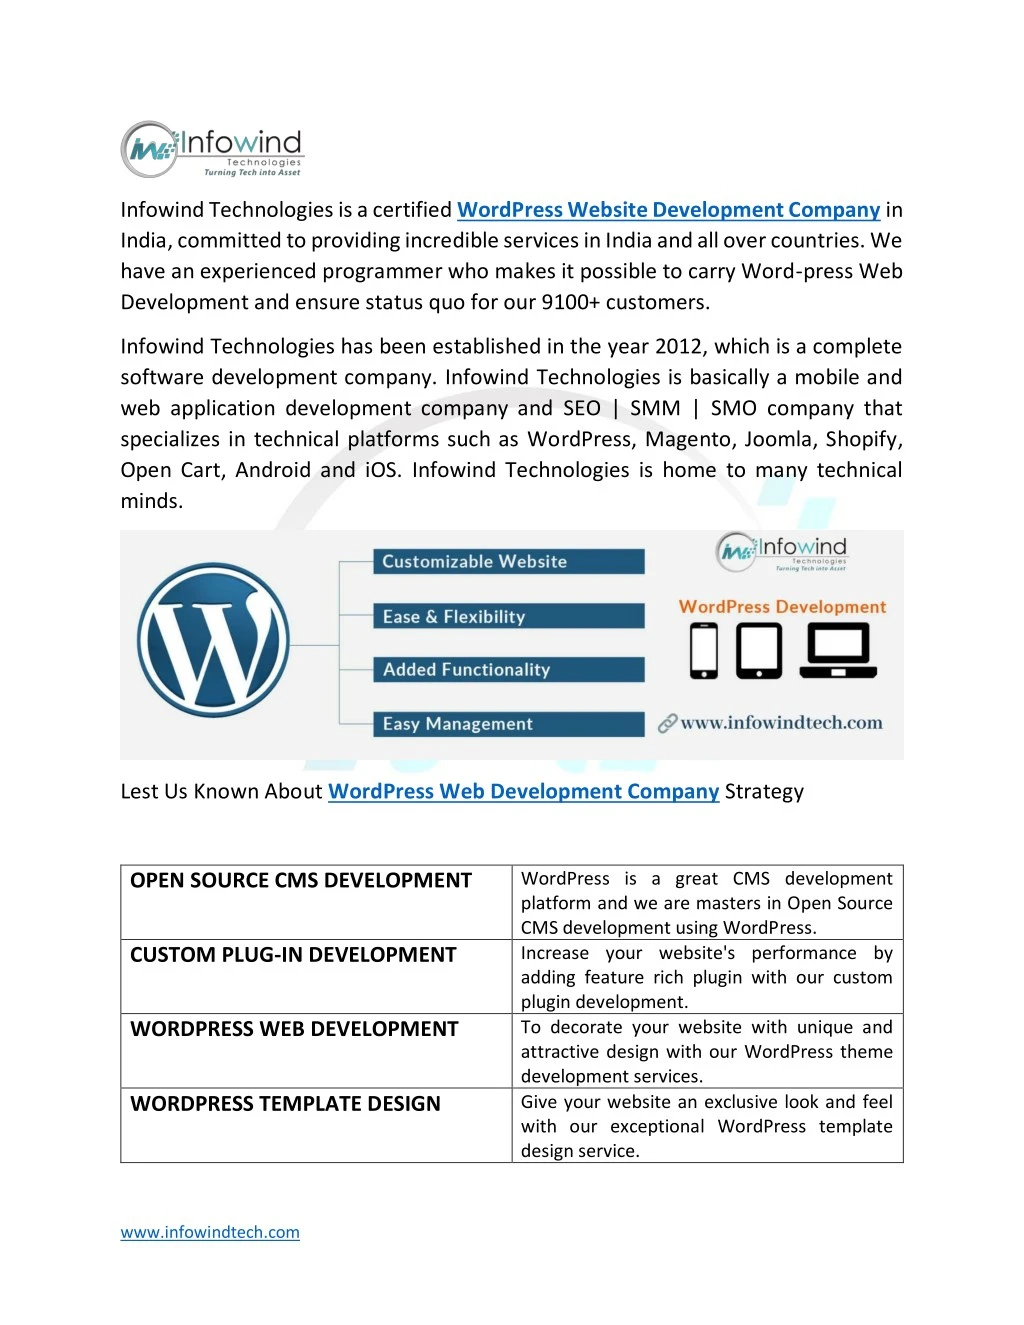 infowind technologies is a certified wordpress